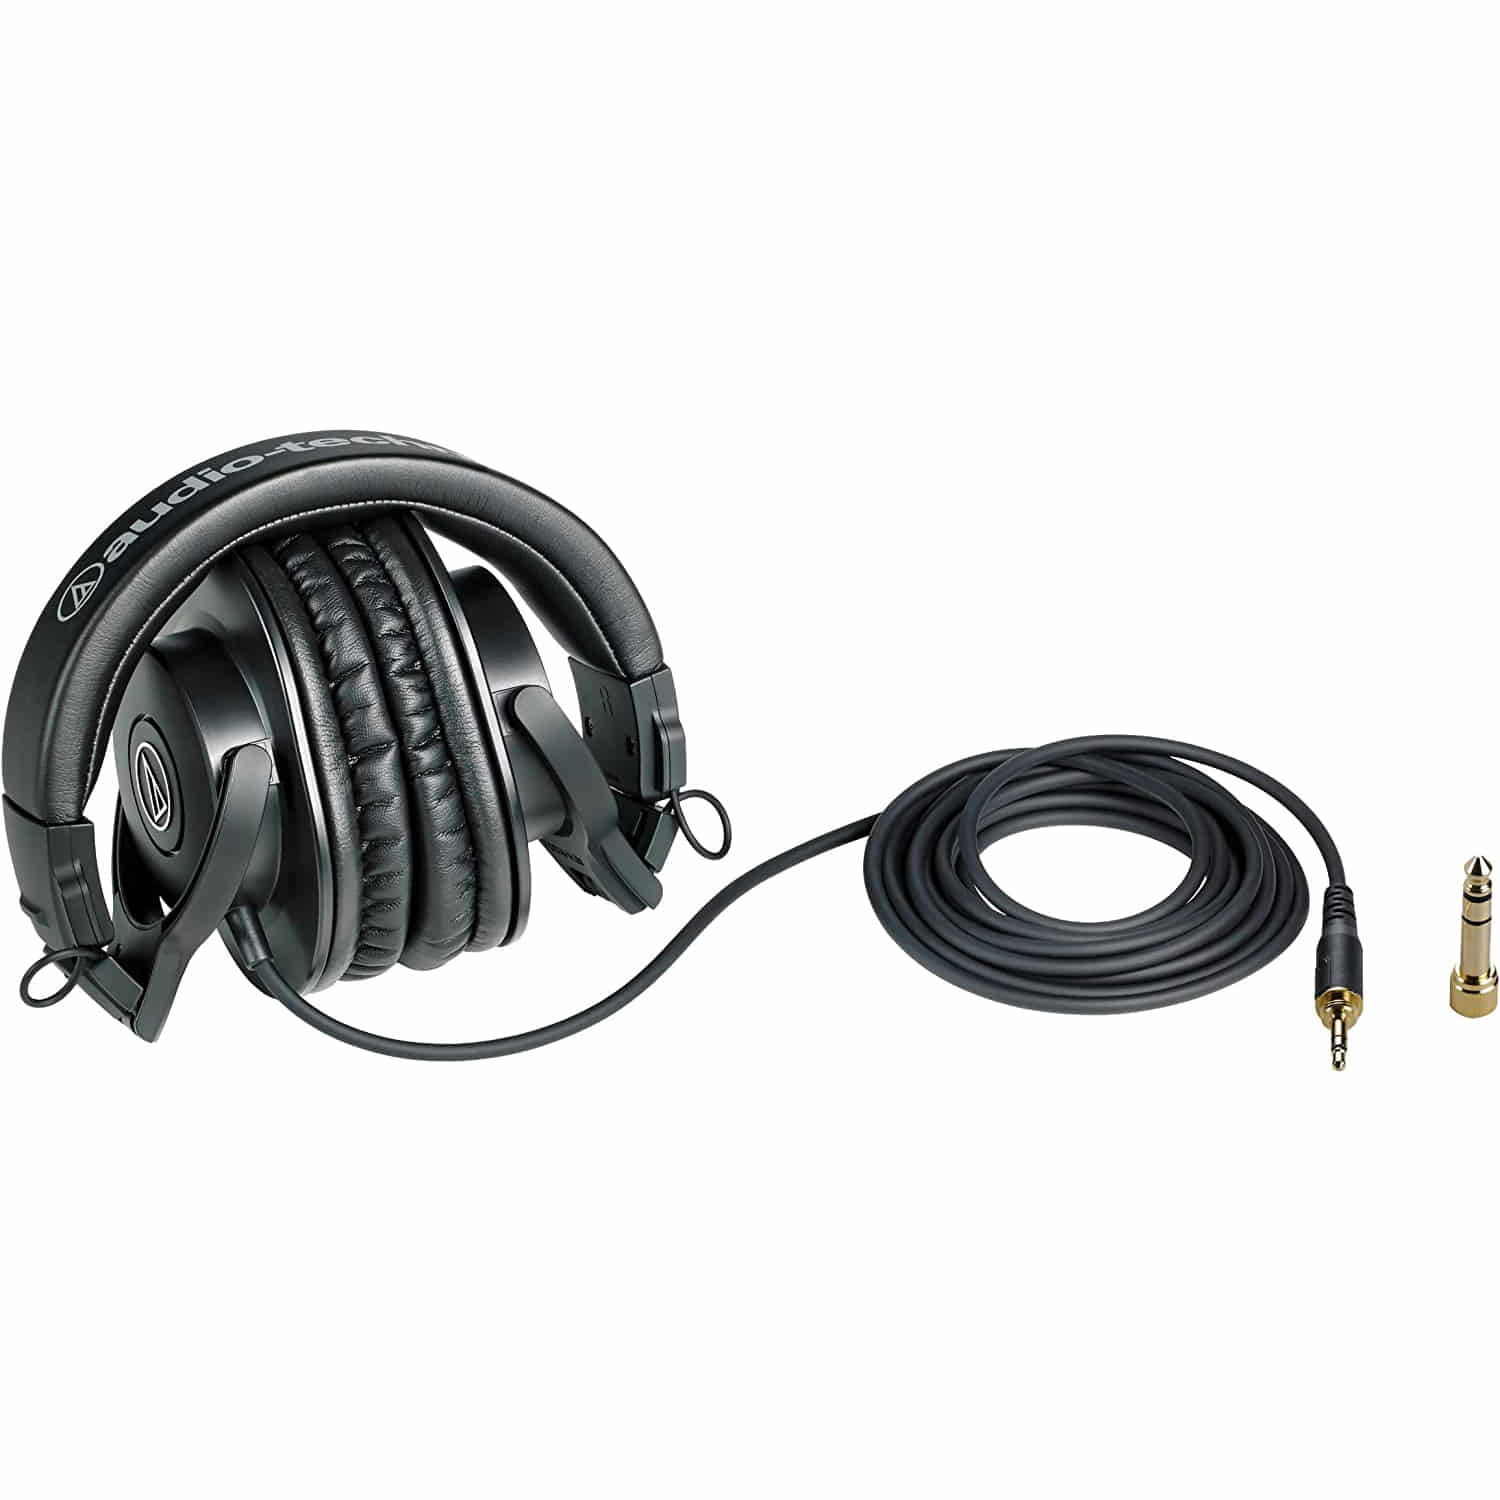 오디오테크니카 헤드폰 ATH-M30x